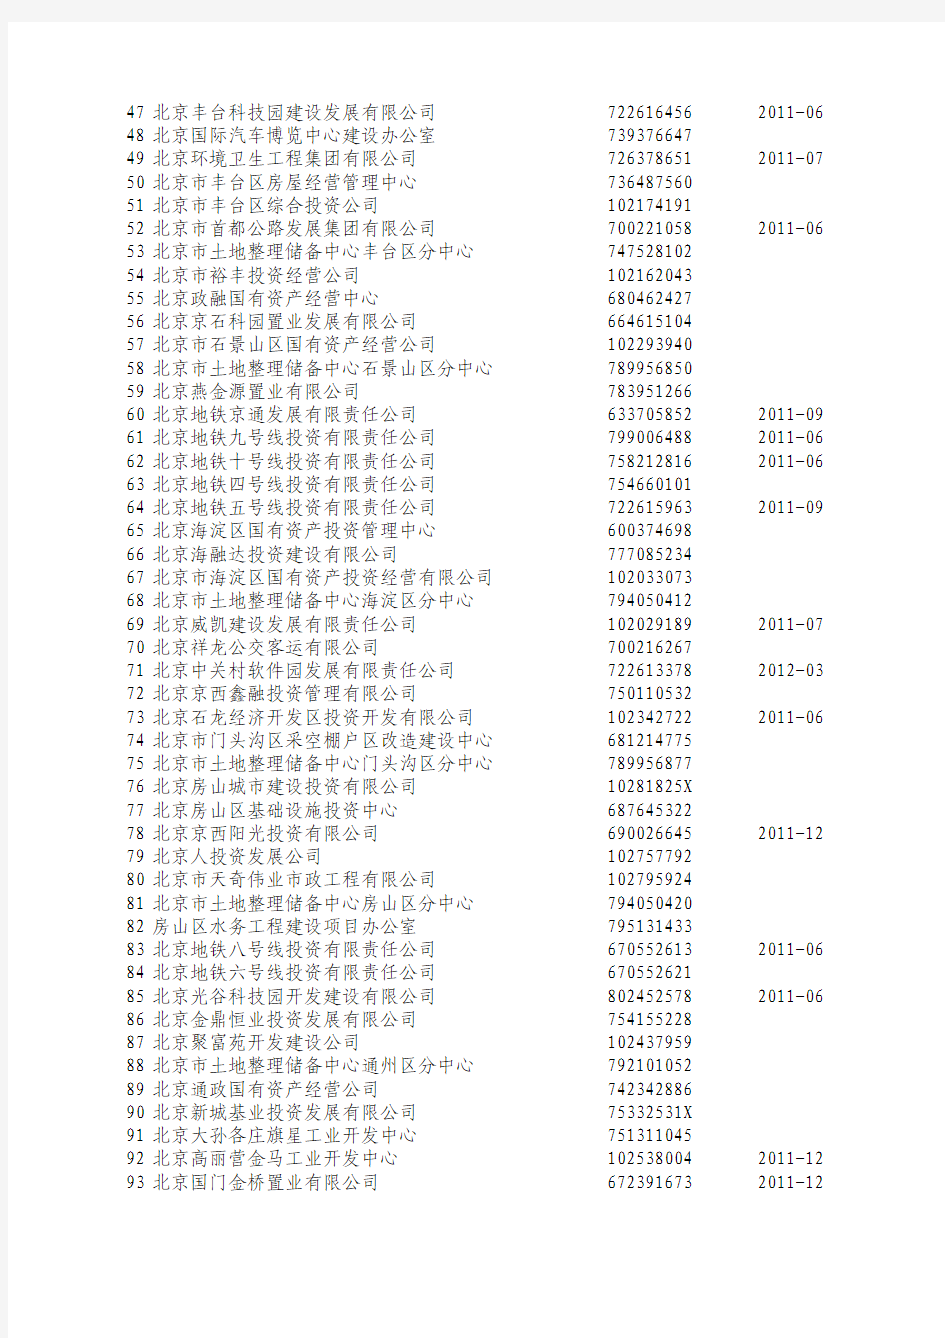 最新银监会政府融资平台目录清单(2013年1季度)